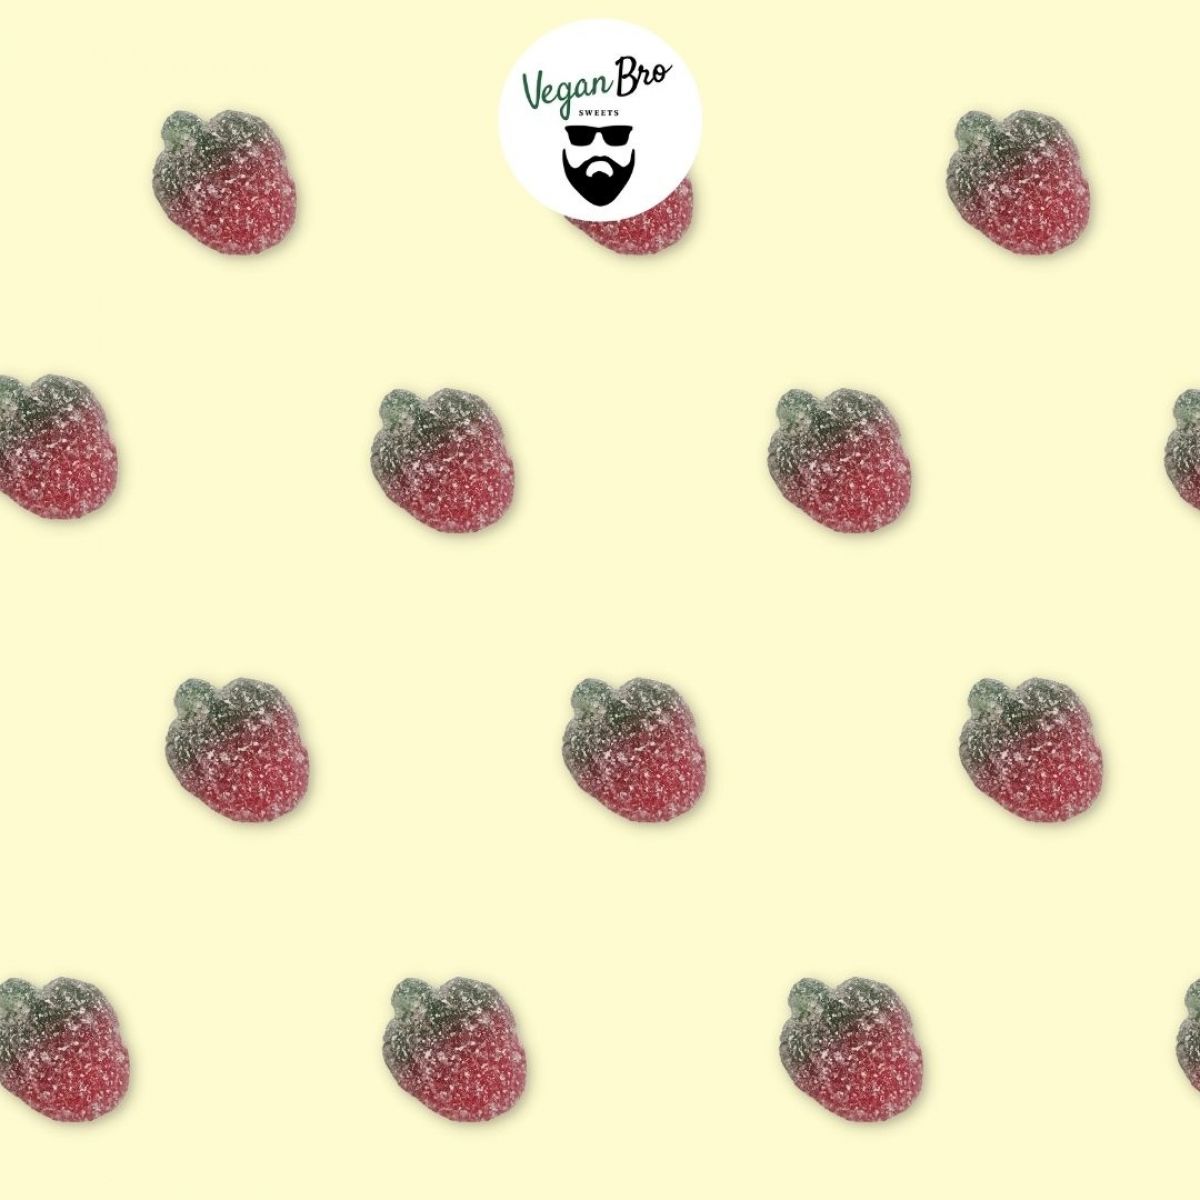  Obst Hintergrundbild 1200x1200. Vegan Bro Erdbeeren 200g